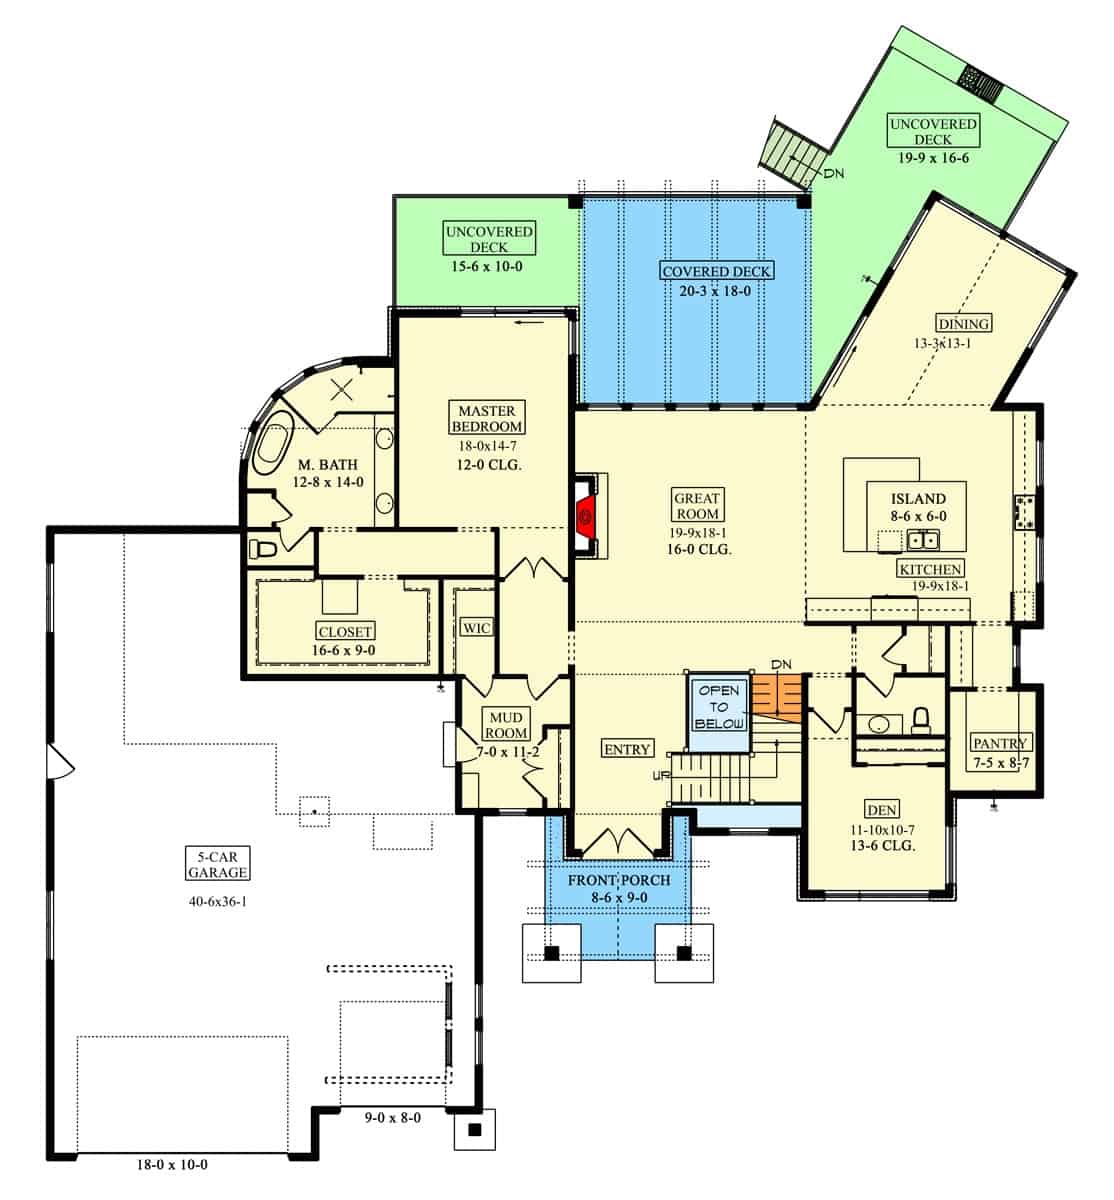 主级平面图的奥两山工匠大厅带回家,大房间,厨房,餐厅,窝,初级套房、寄存室导致车库,和大量的室外空间。